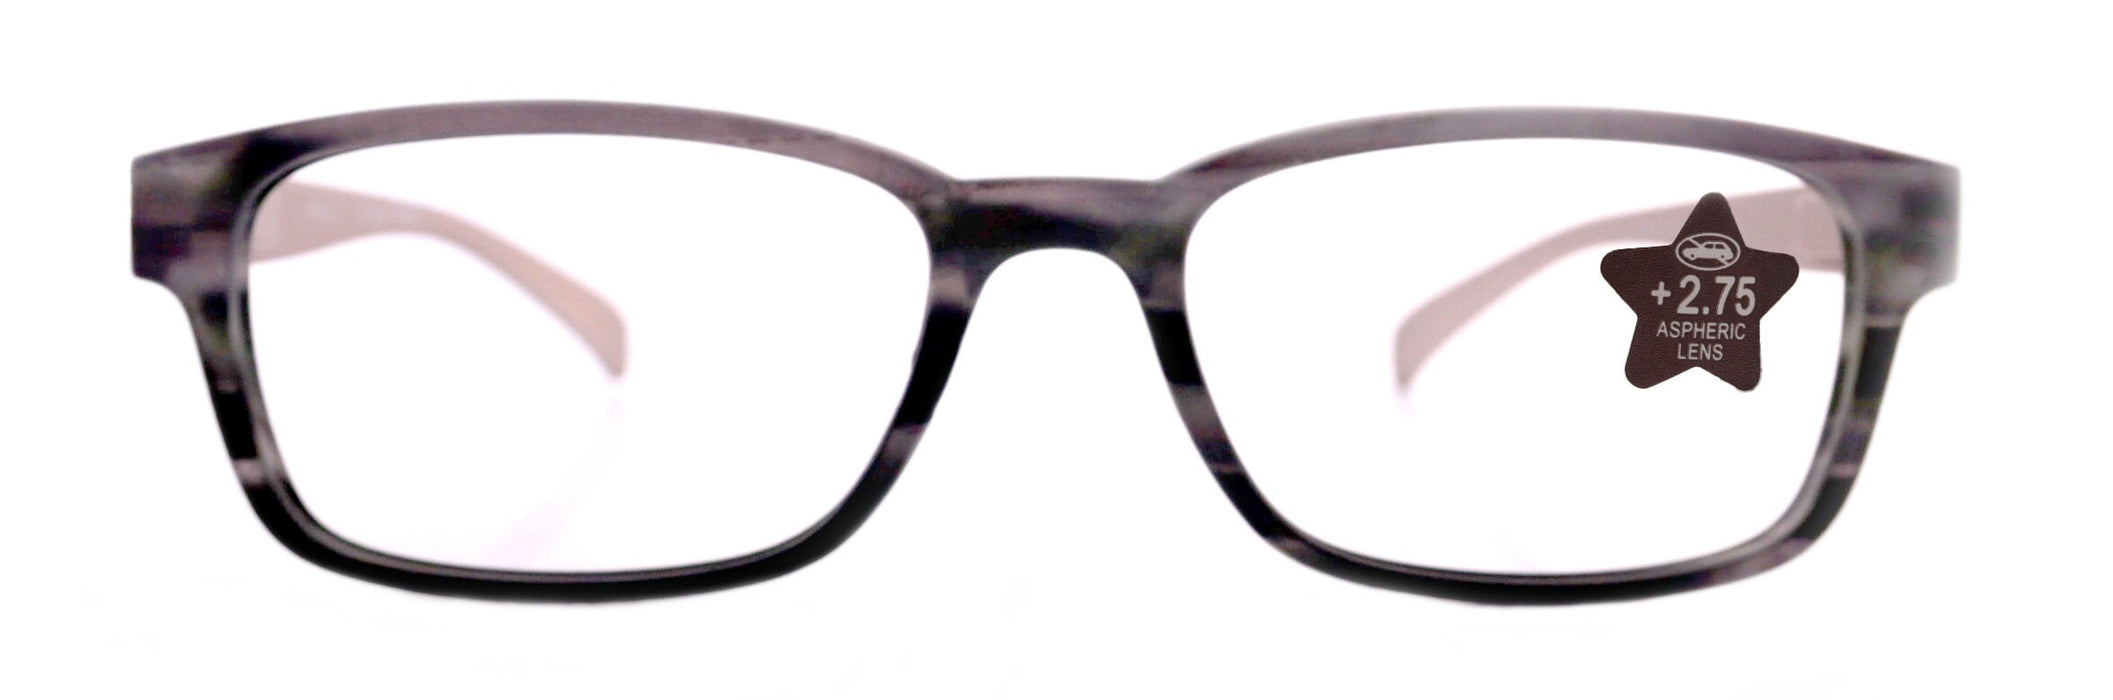 Quinn, (Blue Light Glasses) (60% Anti Blue Light Ray Protection) Men, Women, Anti Eyestrain, L. Amber Lens, 4 All Screen Types, Square Grey